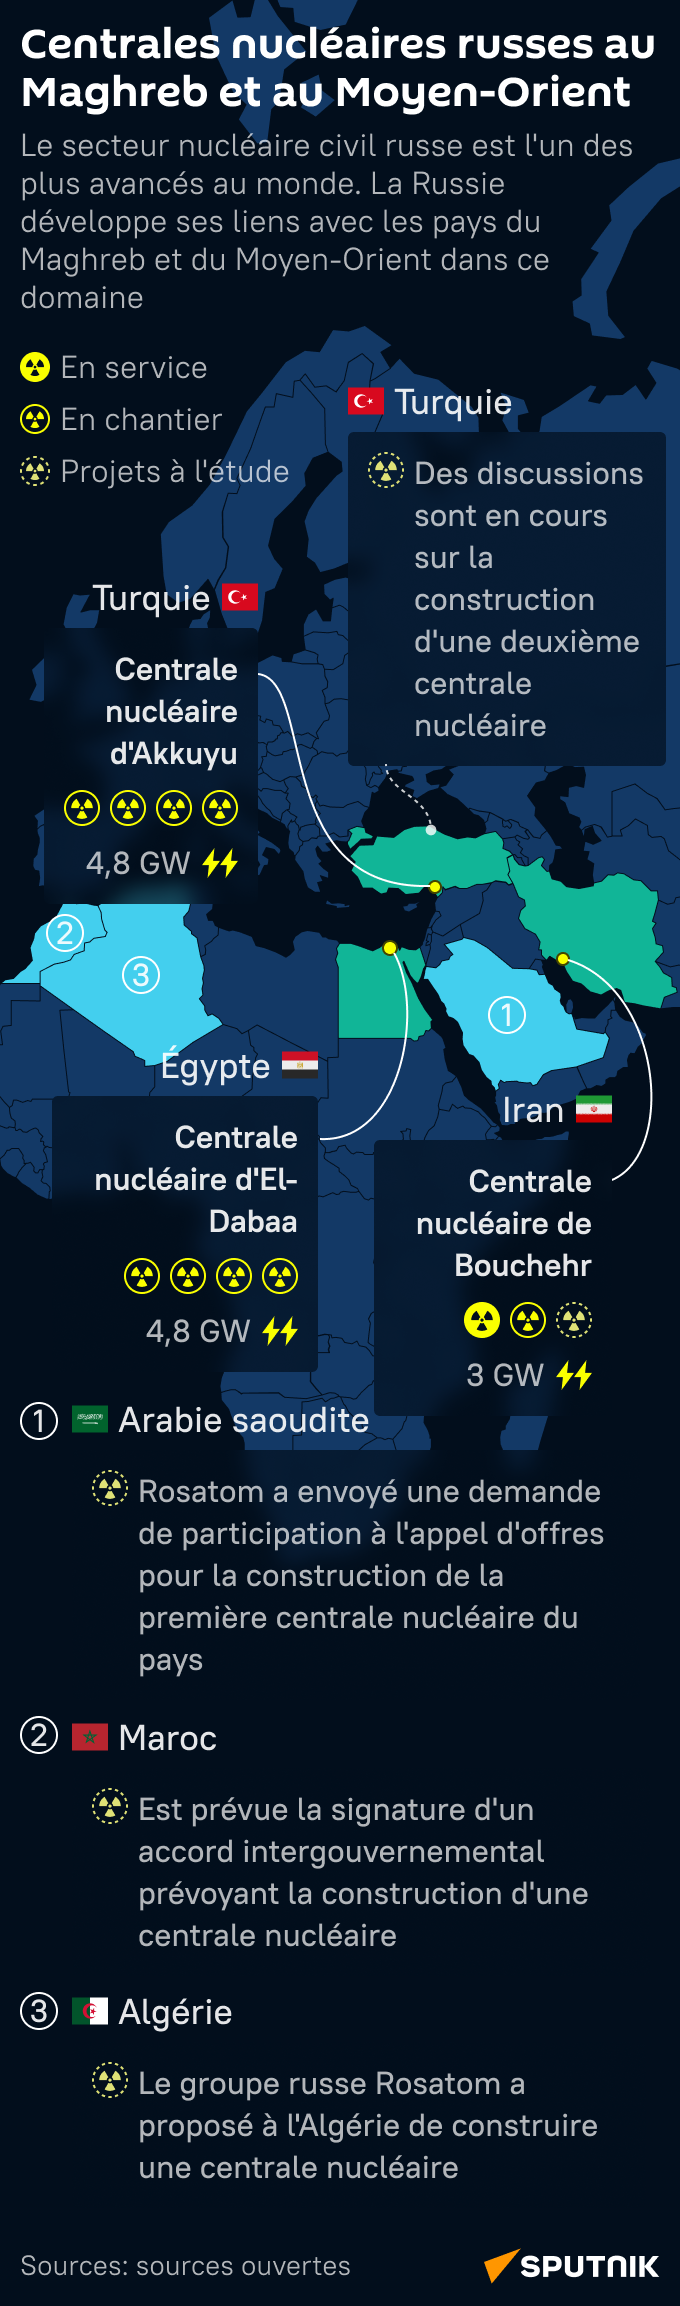 Centrales nucléaires russes au Maghreb et au Moyen-Orient - Sputnik Afrique